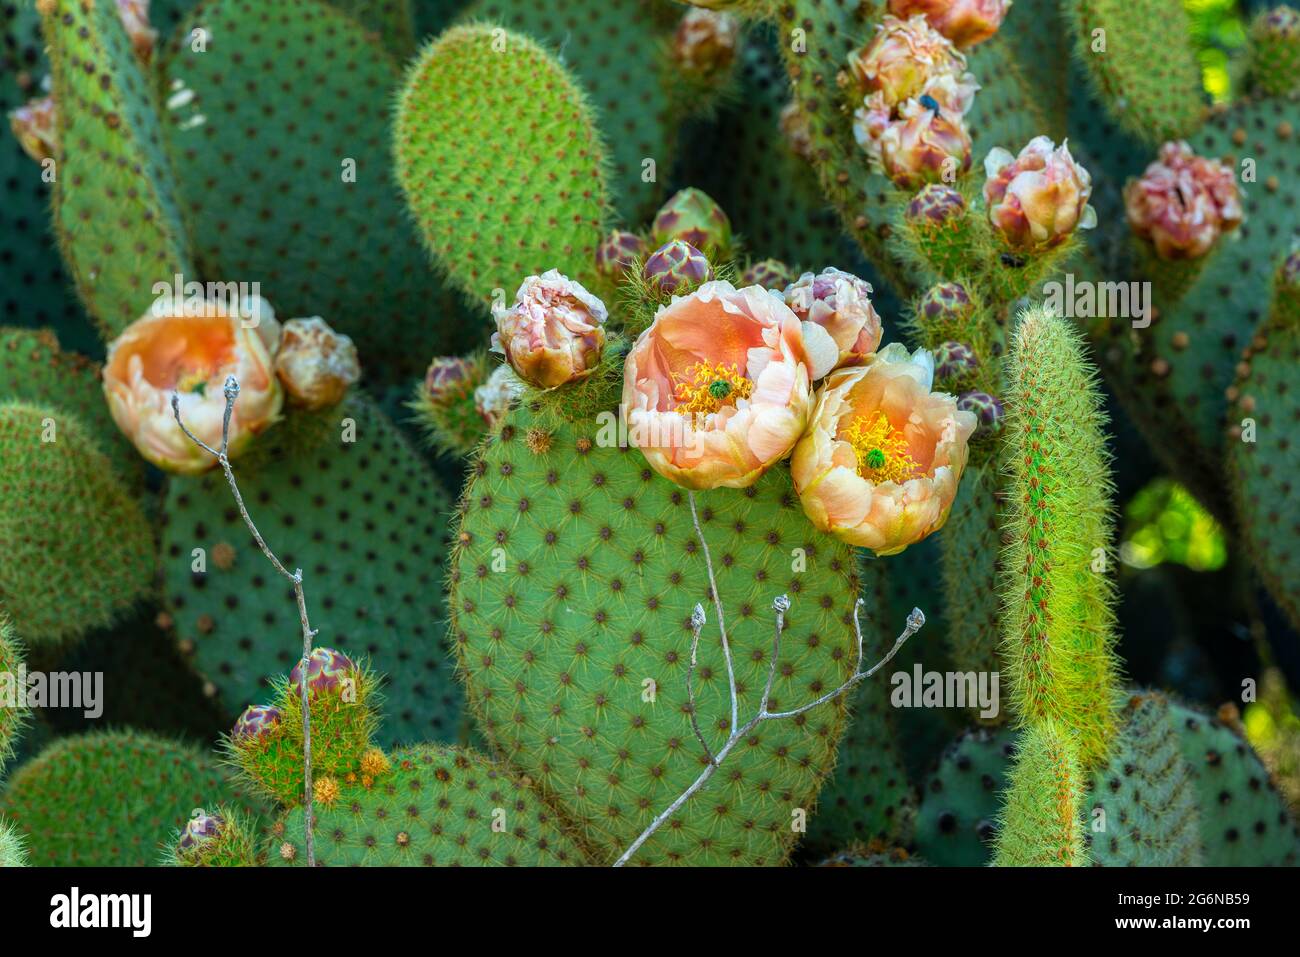 Particolare della fioritura di pera di prickly, opuntia ficus indica. Abruzzo, italia, europa Foto Stock